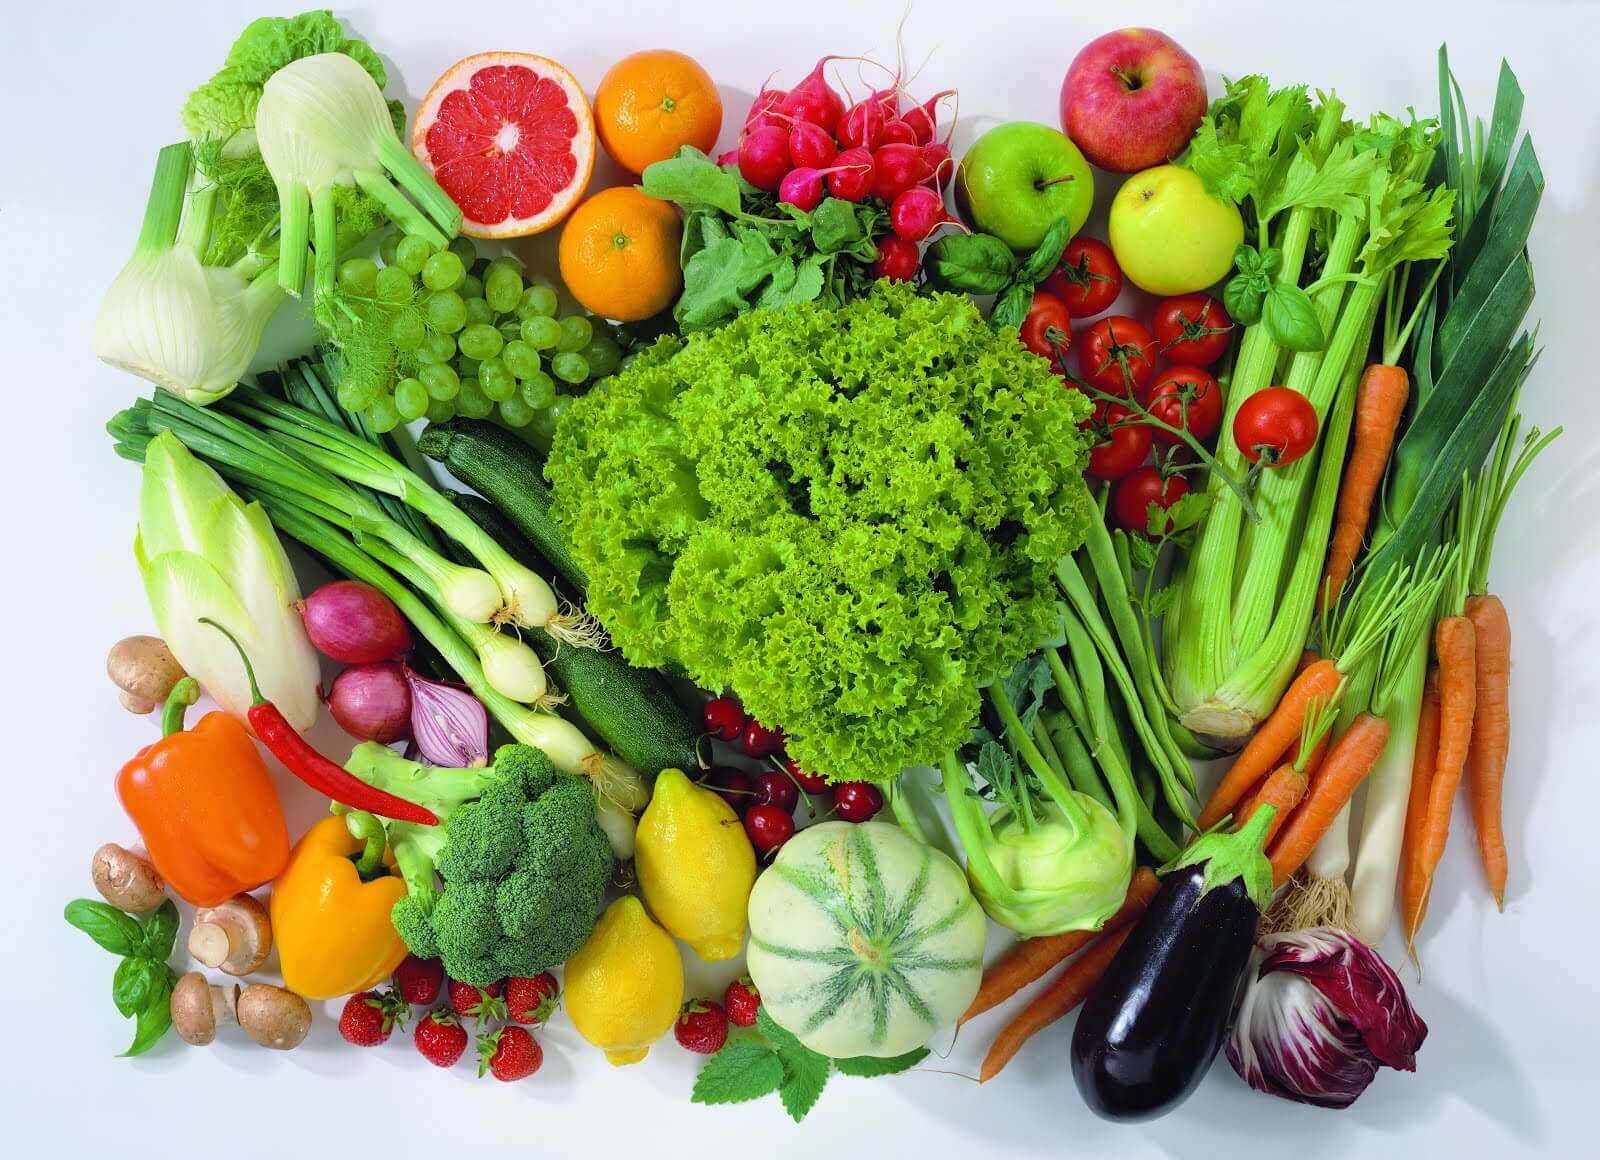 forskellige frugter og grøntsager